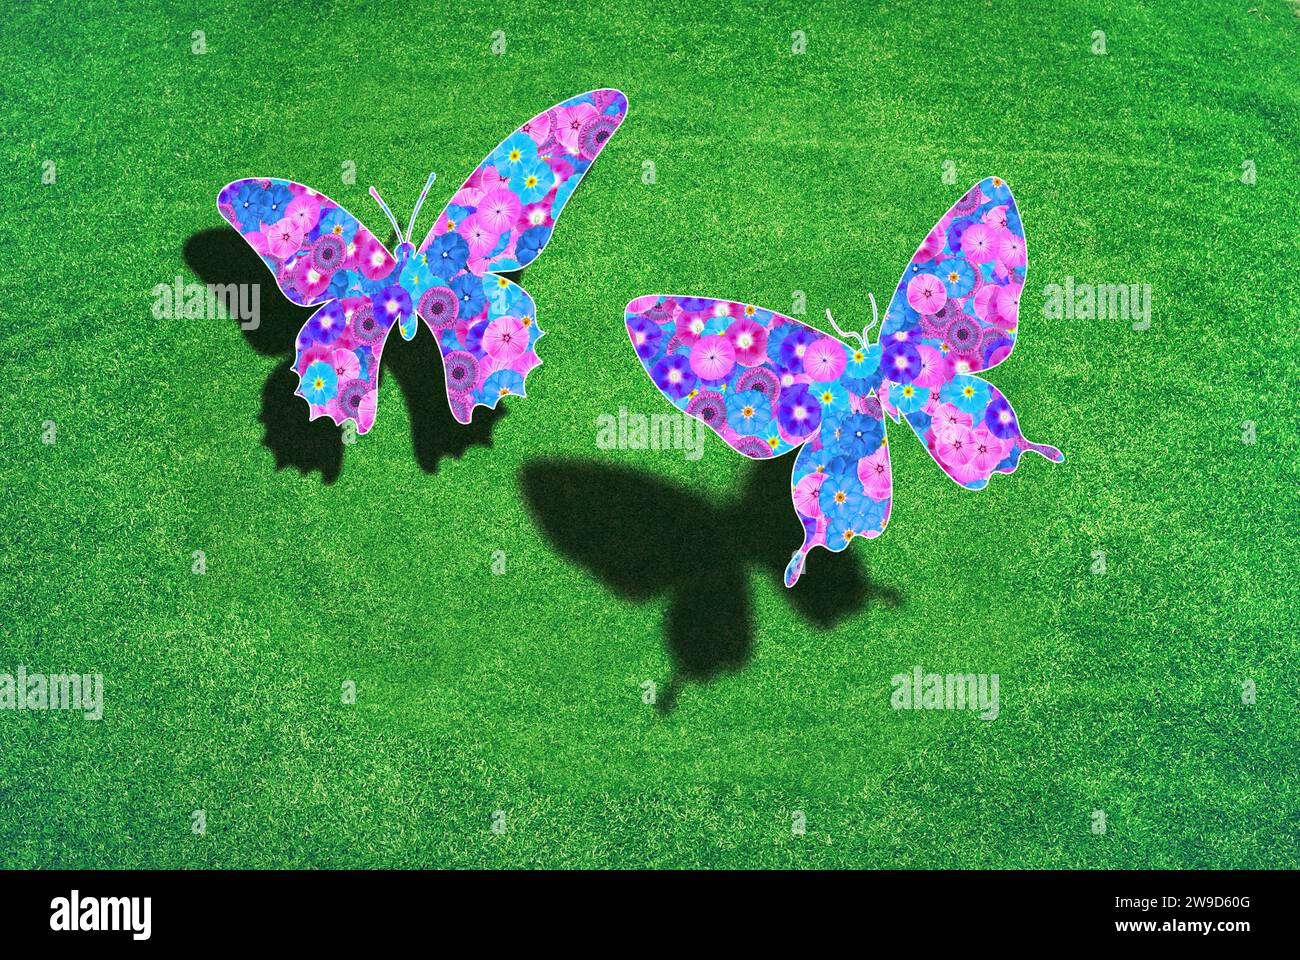 Zwei Schmetterlinge über einem grünen Rasen mit Schatten, die Flügel sind mit Blumen gemustert, Symbol für Naturschutz, Umweltschutz Stockfoto